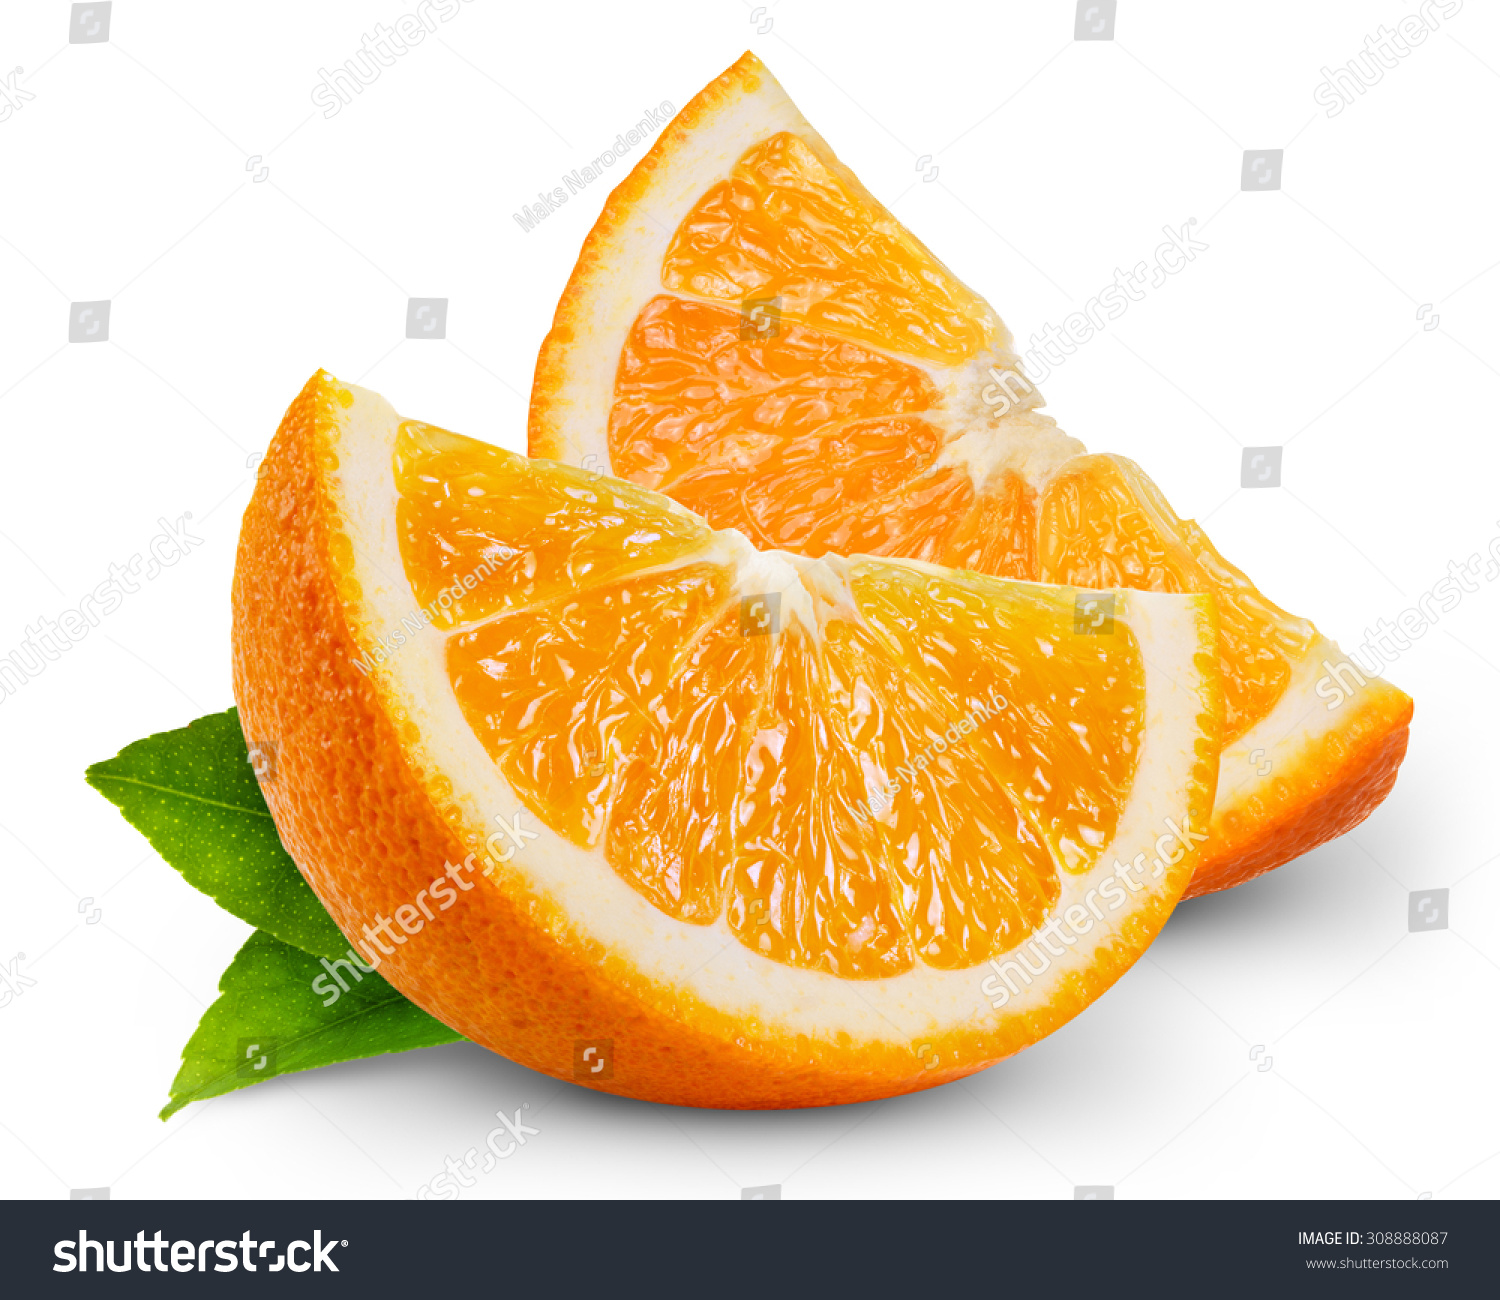 Orange Fruit Slice Isolated On White Stock Photo 308888087 ...